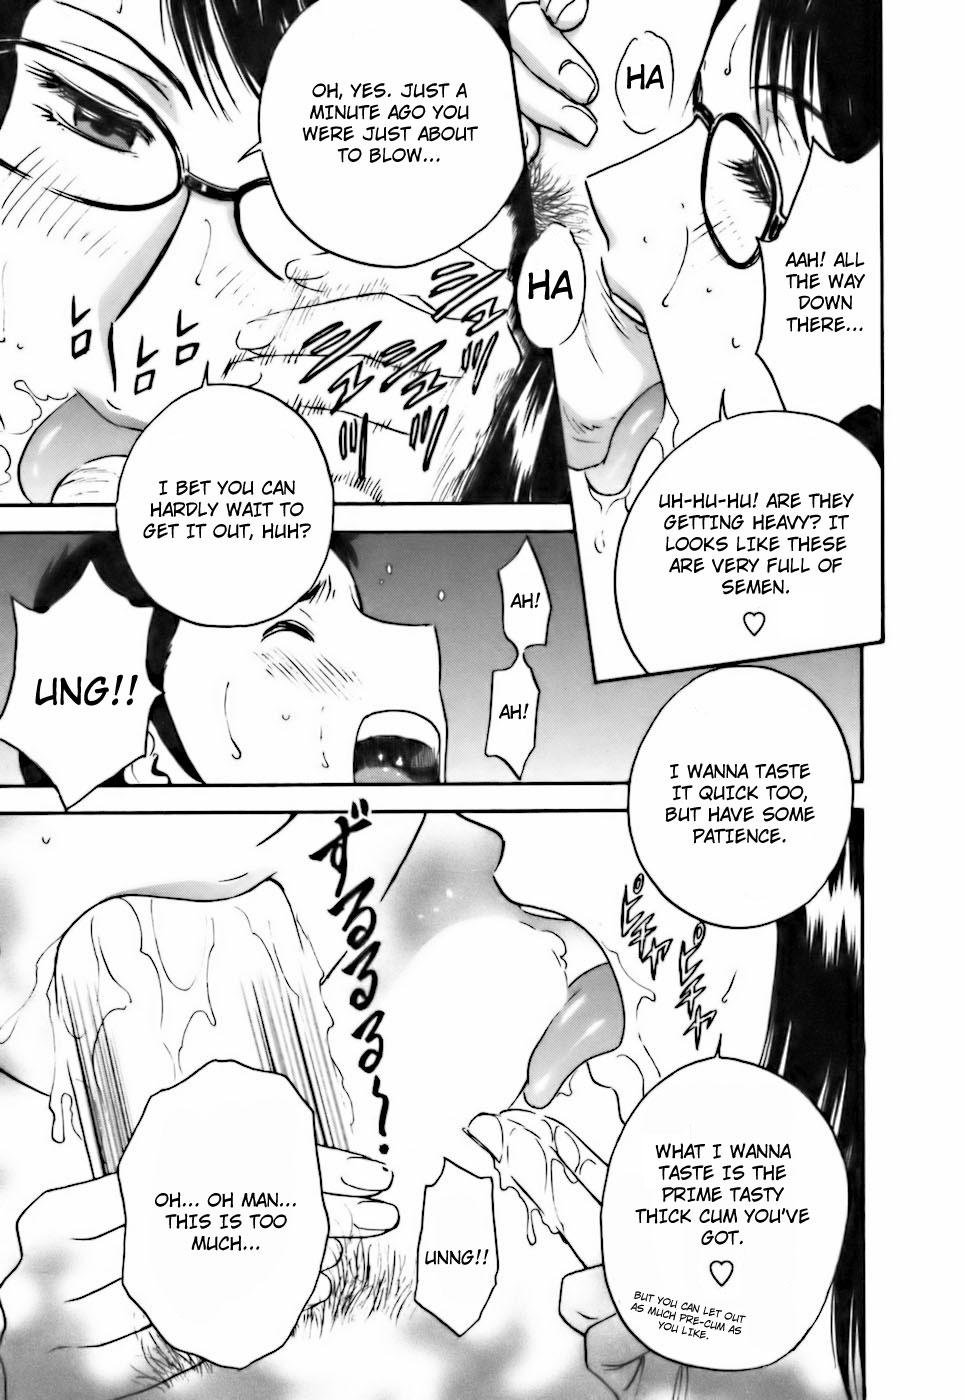 [Hidemaru] Mo-Retsu! Boin Sensei (Boing Boing Teacher) Vol.3 [English] [4dawgz] [Tadanohito] 87